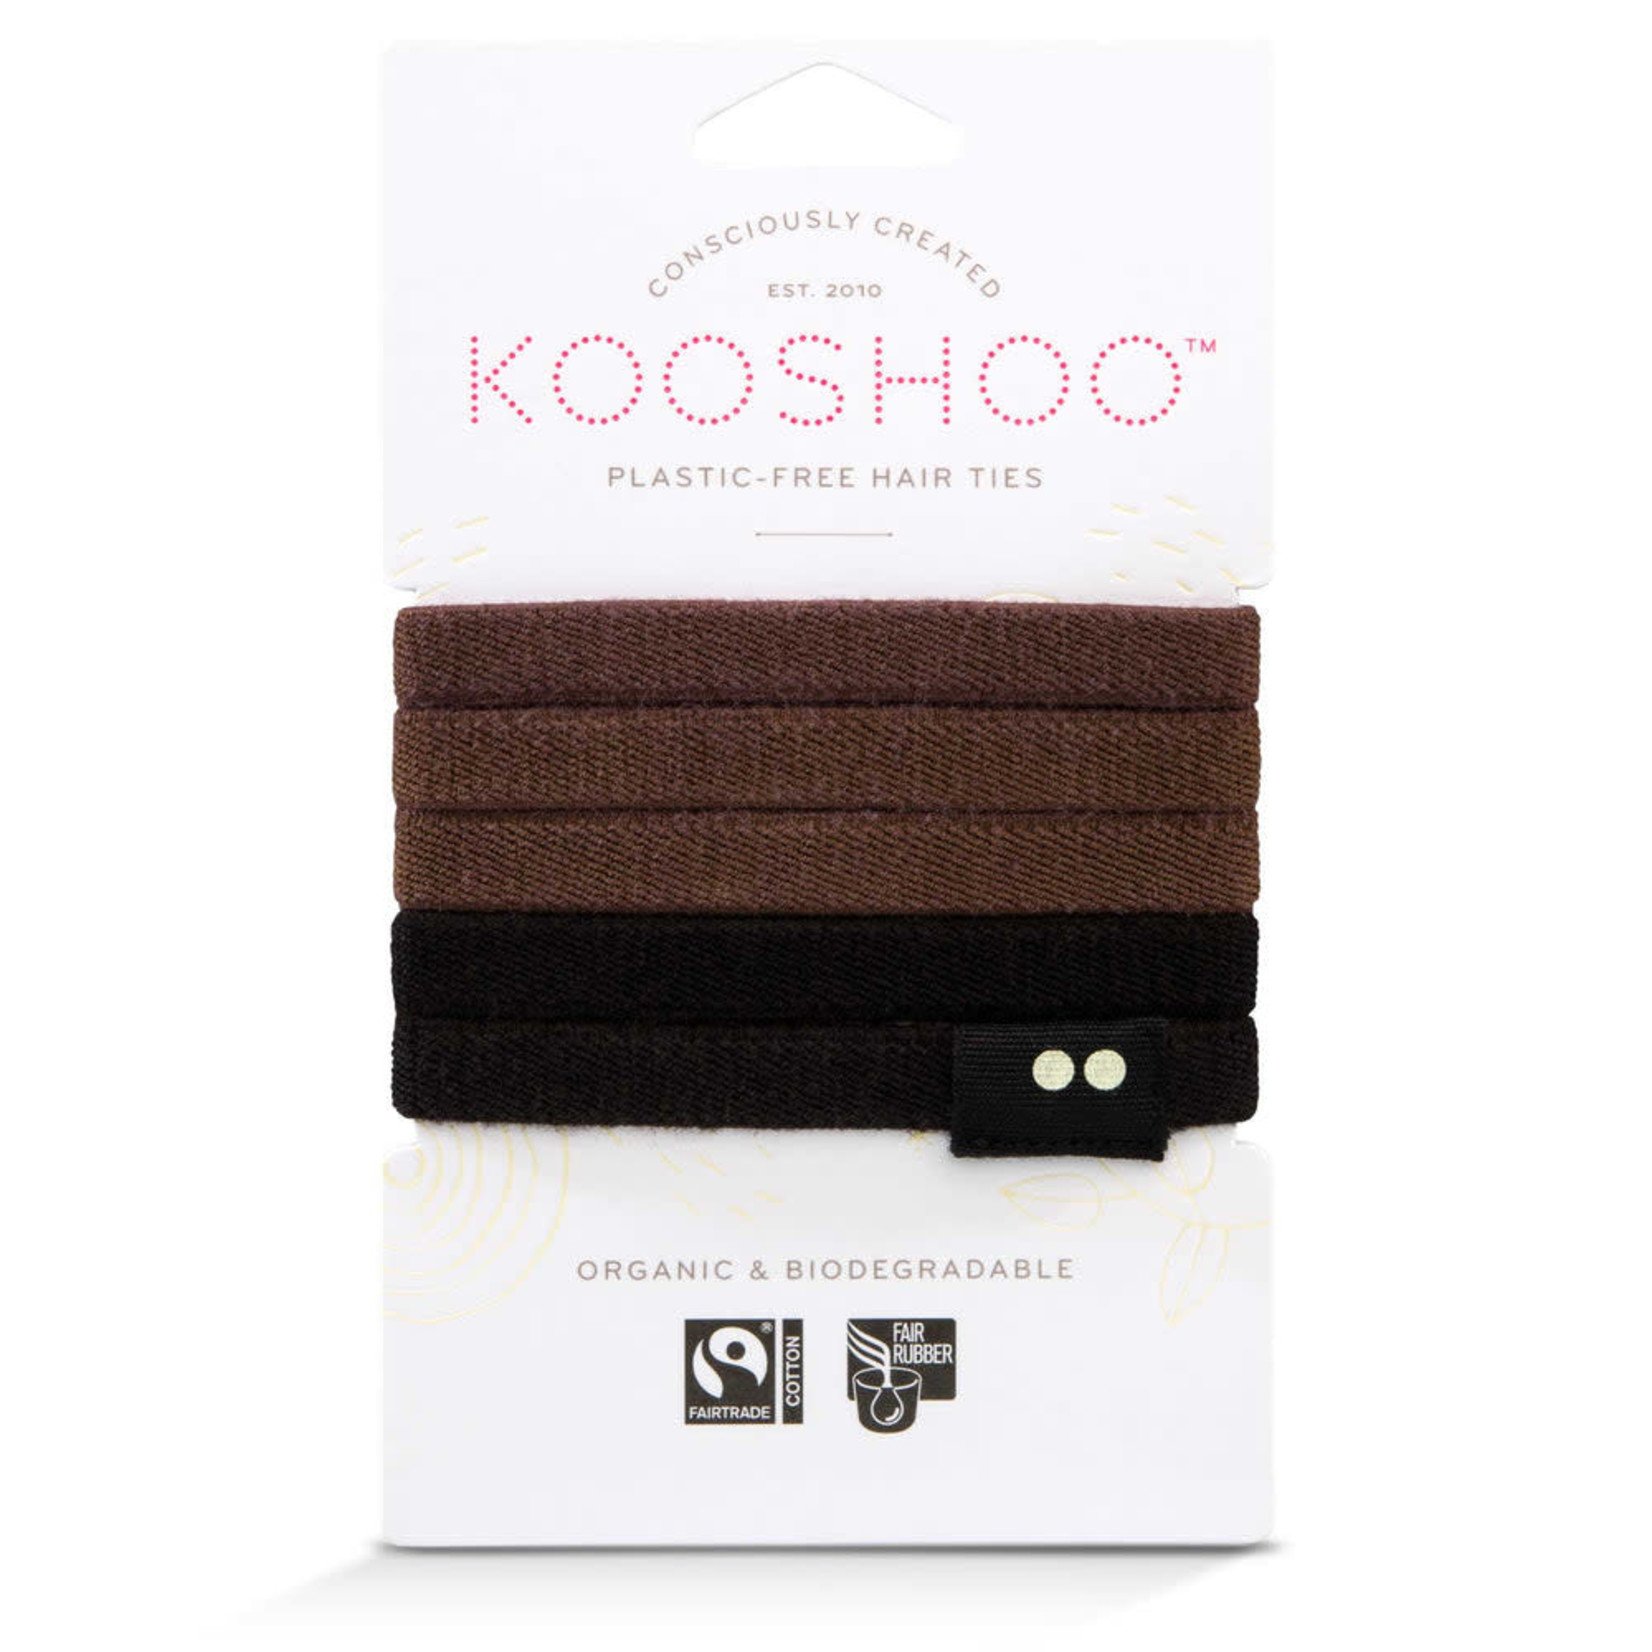 Kooshoo KOOSHOO Plastic-Free Hair Ties 5 pack